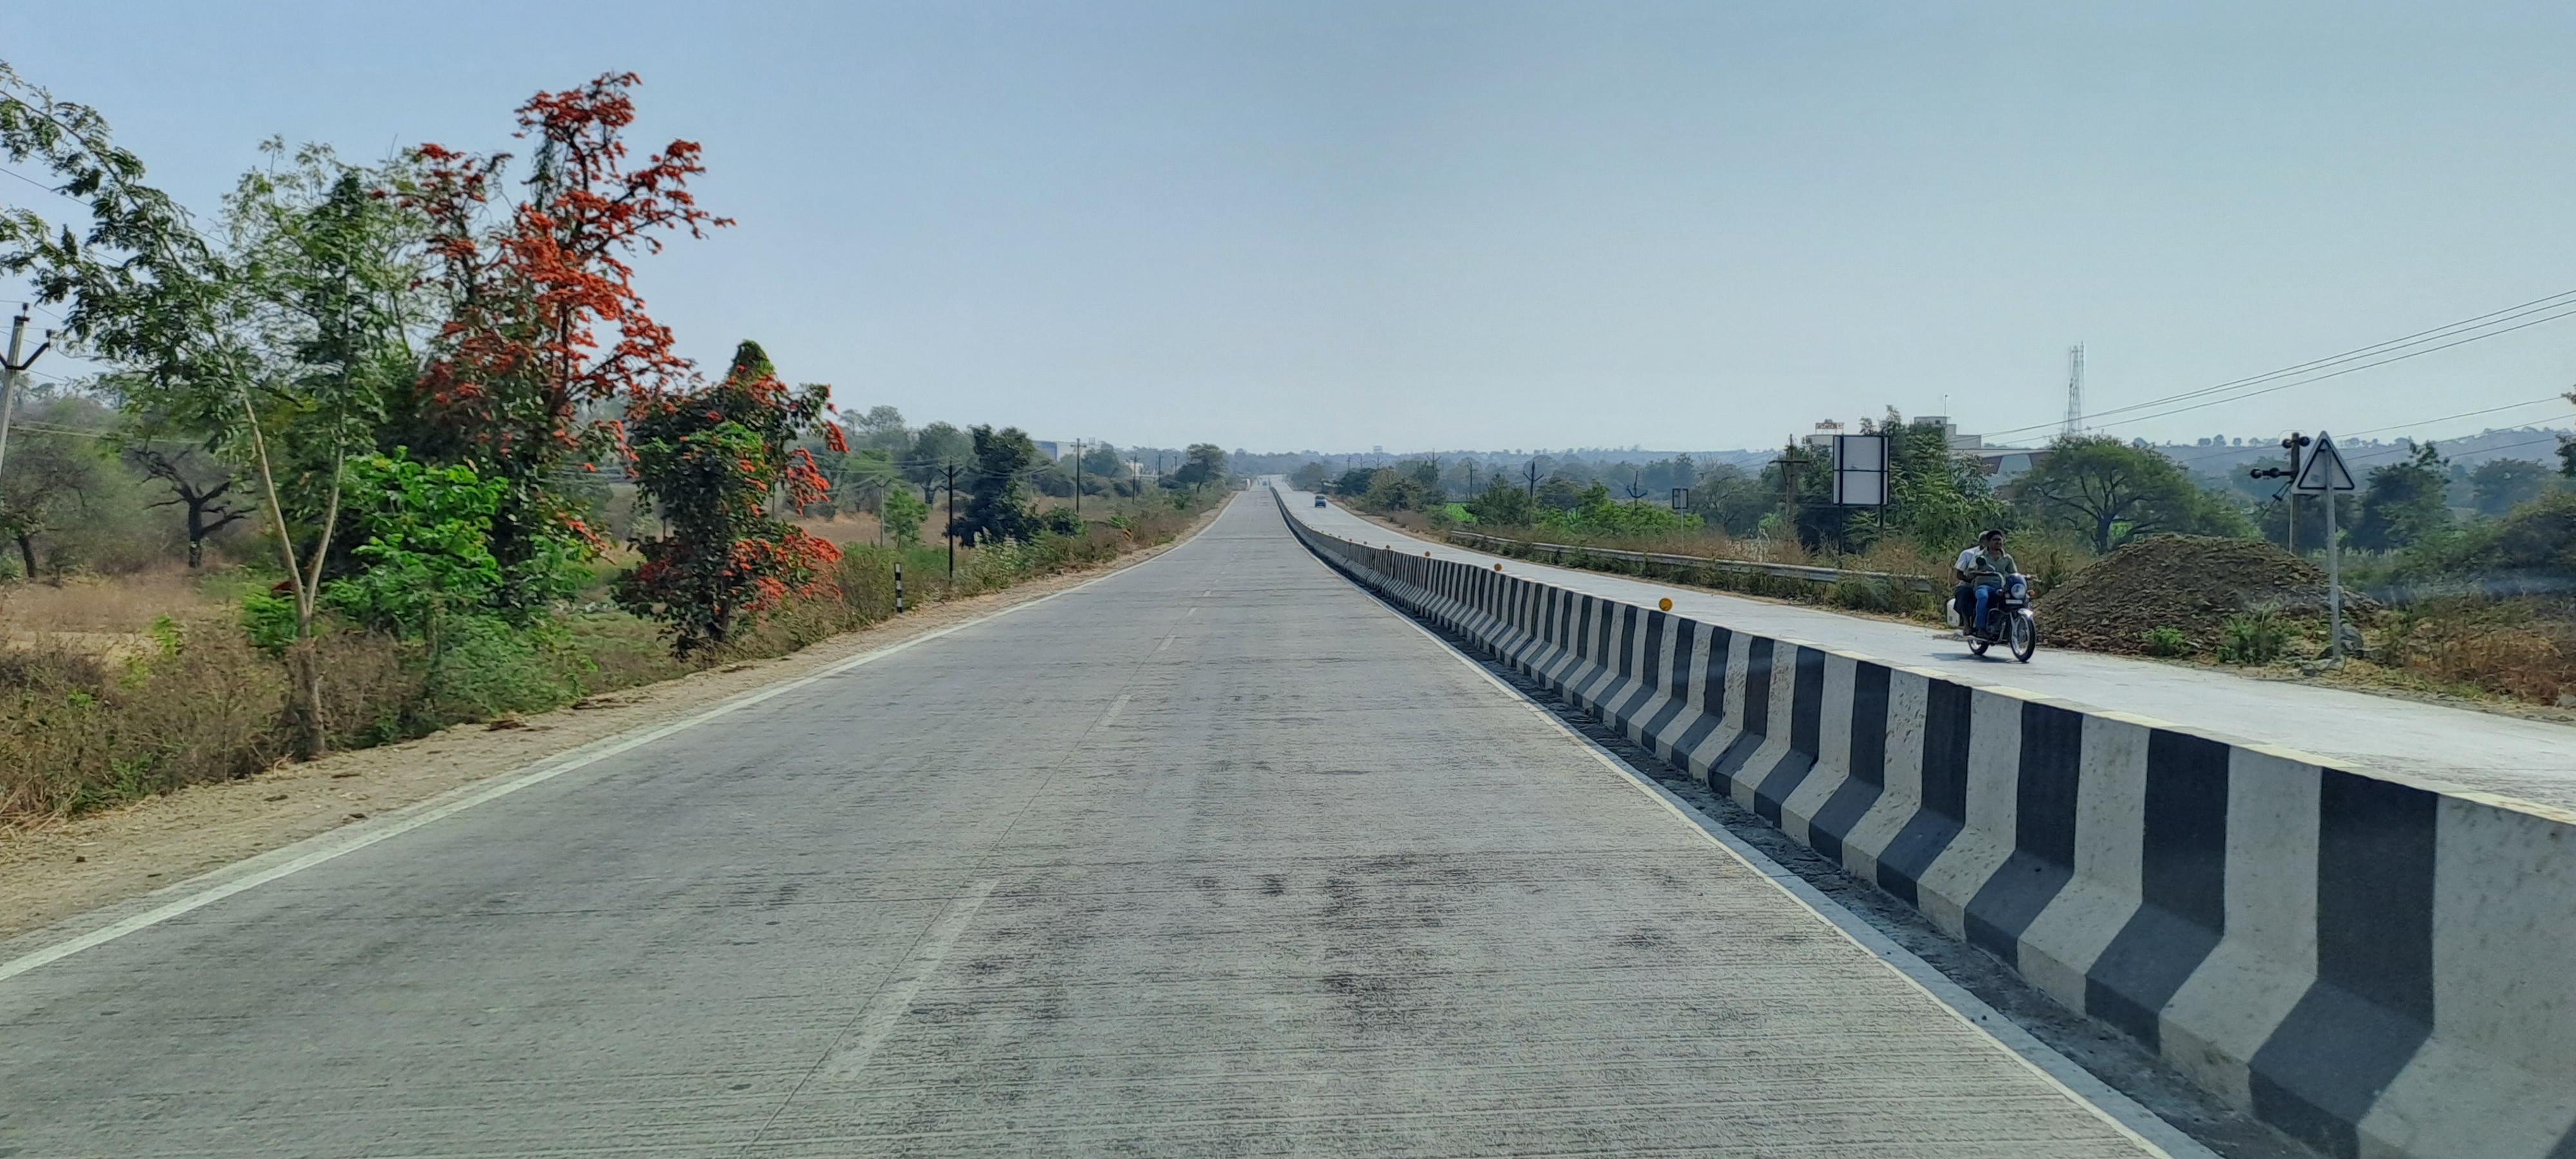 Shirod – Sahapur: Section of NH-752 I